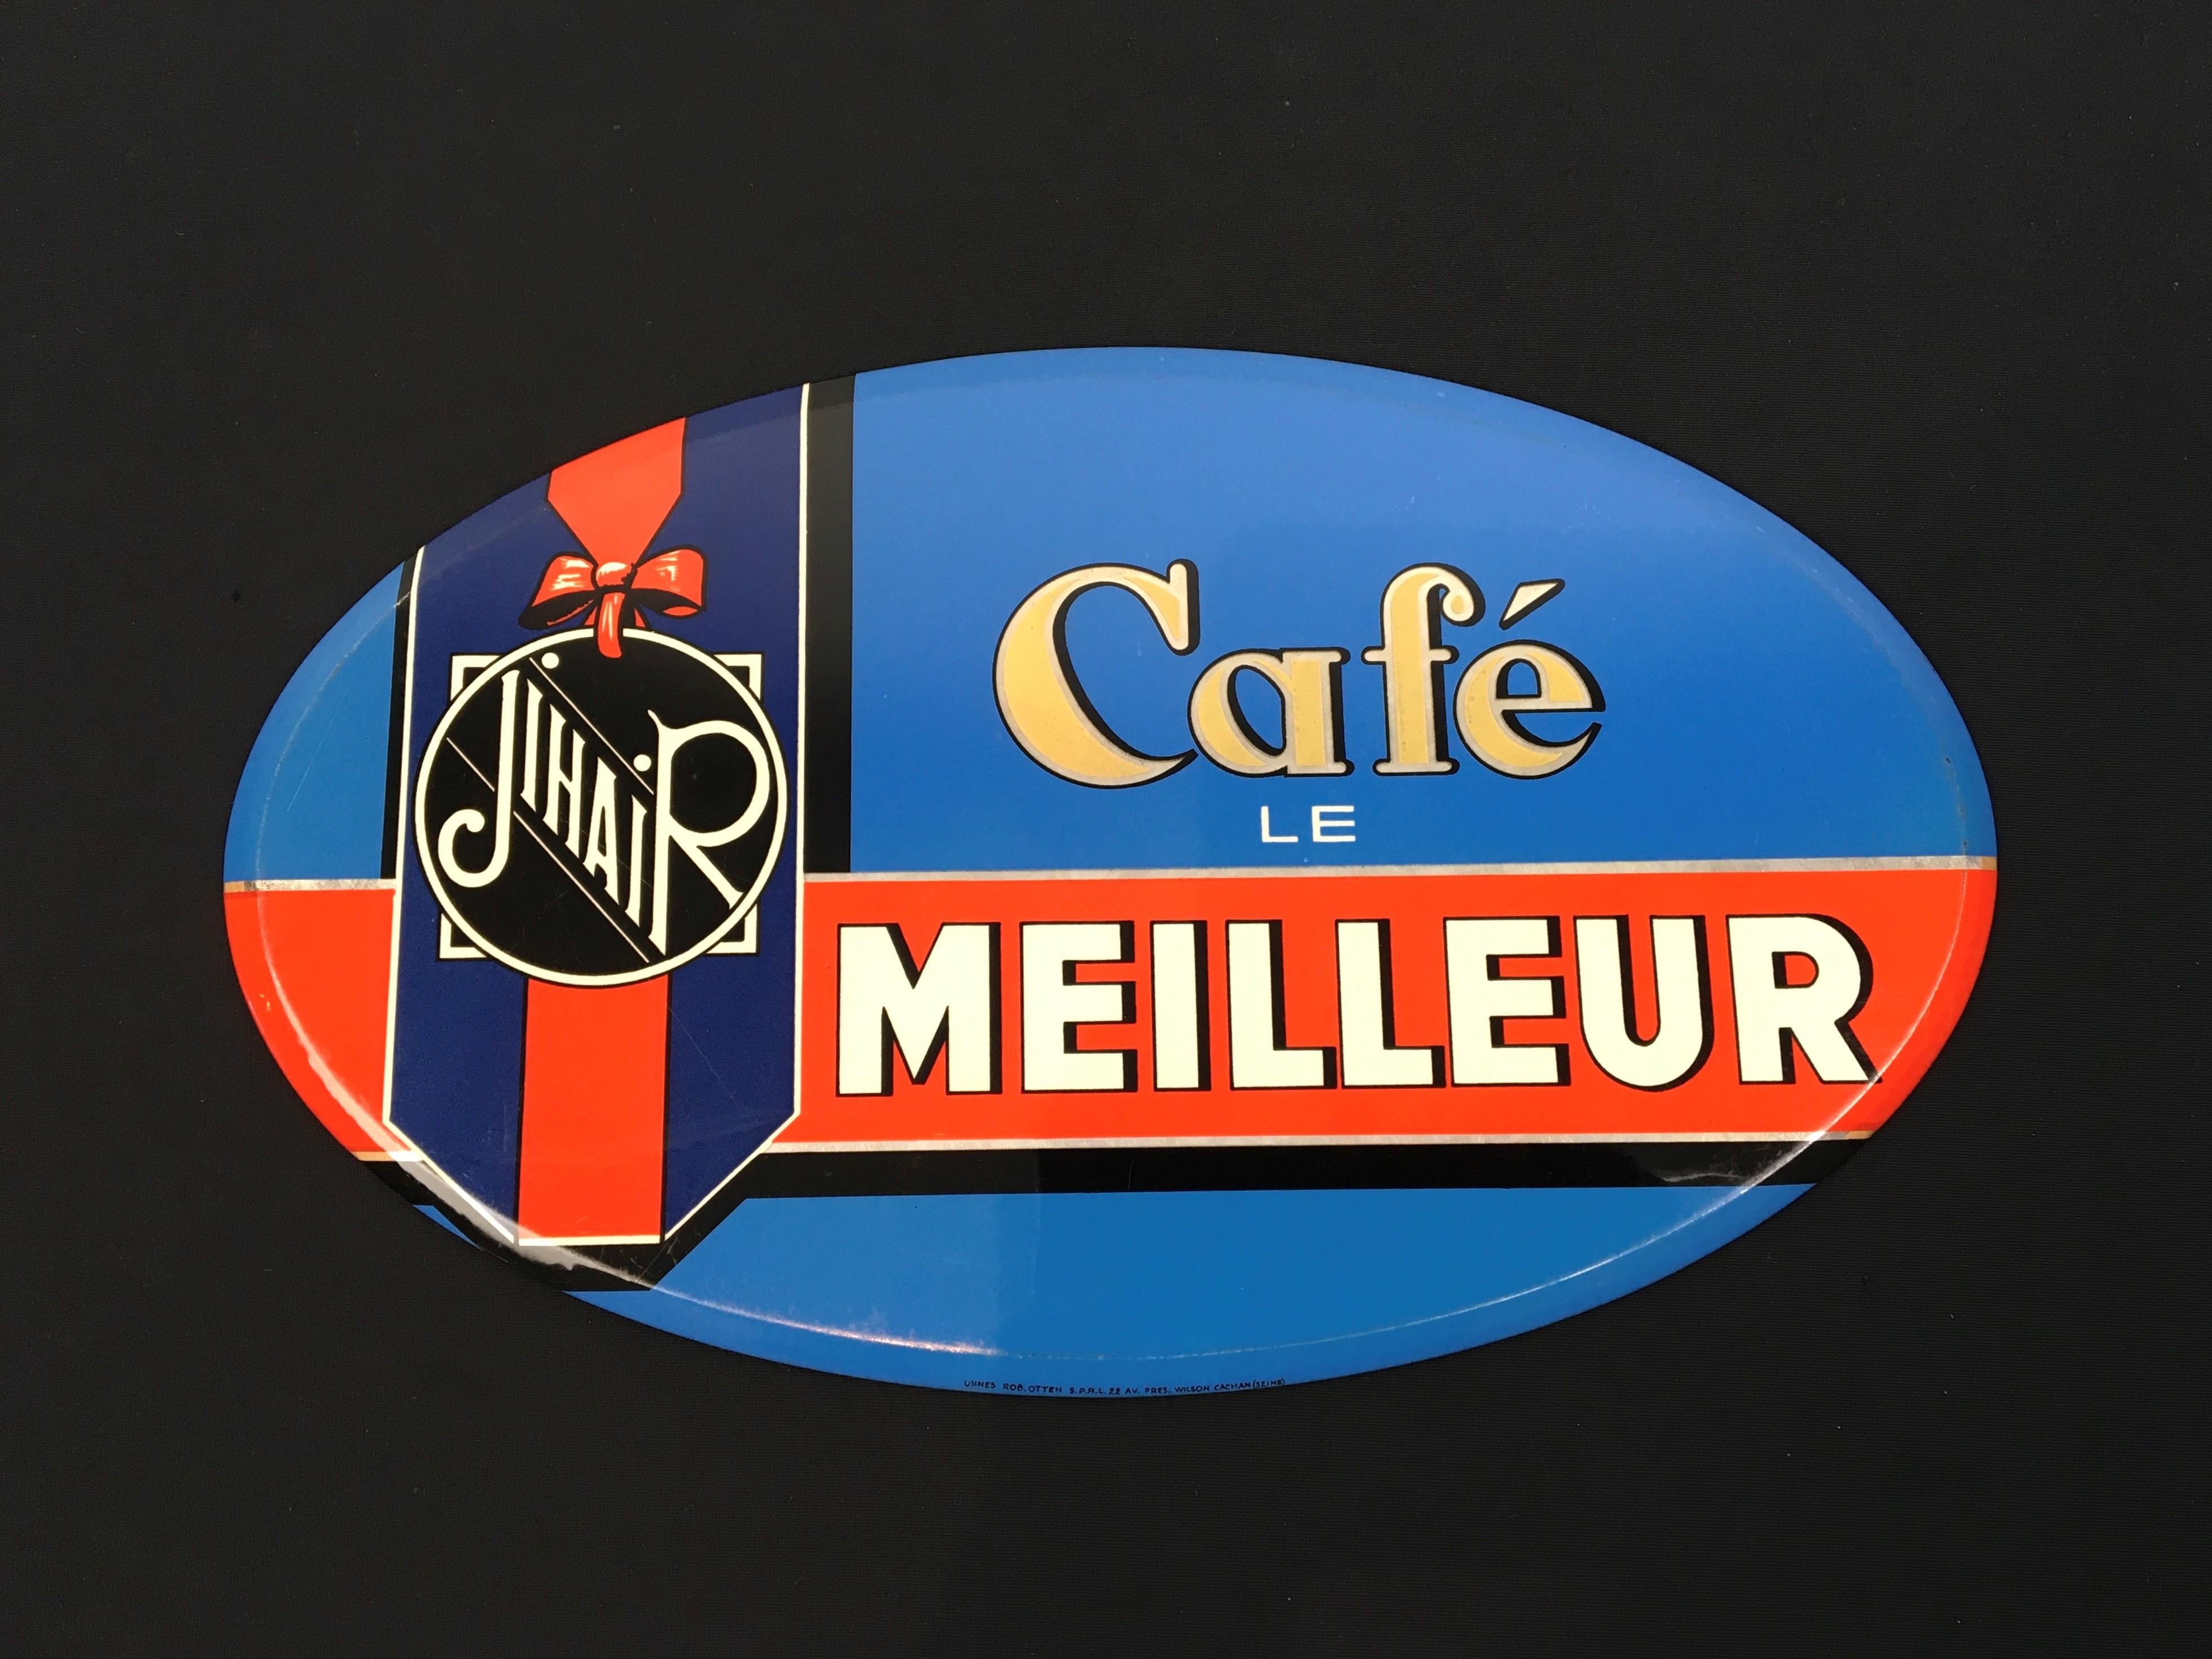 französisches Wandschild für Kaffee aus den 1950er Jahren. 
Tolle Wanddekoration im modernen Stil; ein Schild in leuchtender blauer Farbe mit einem roten Band und einer Art Schleife mit dem Jihair-Logo darauf. 
Dieses ovale Wandschild wurde für